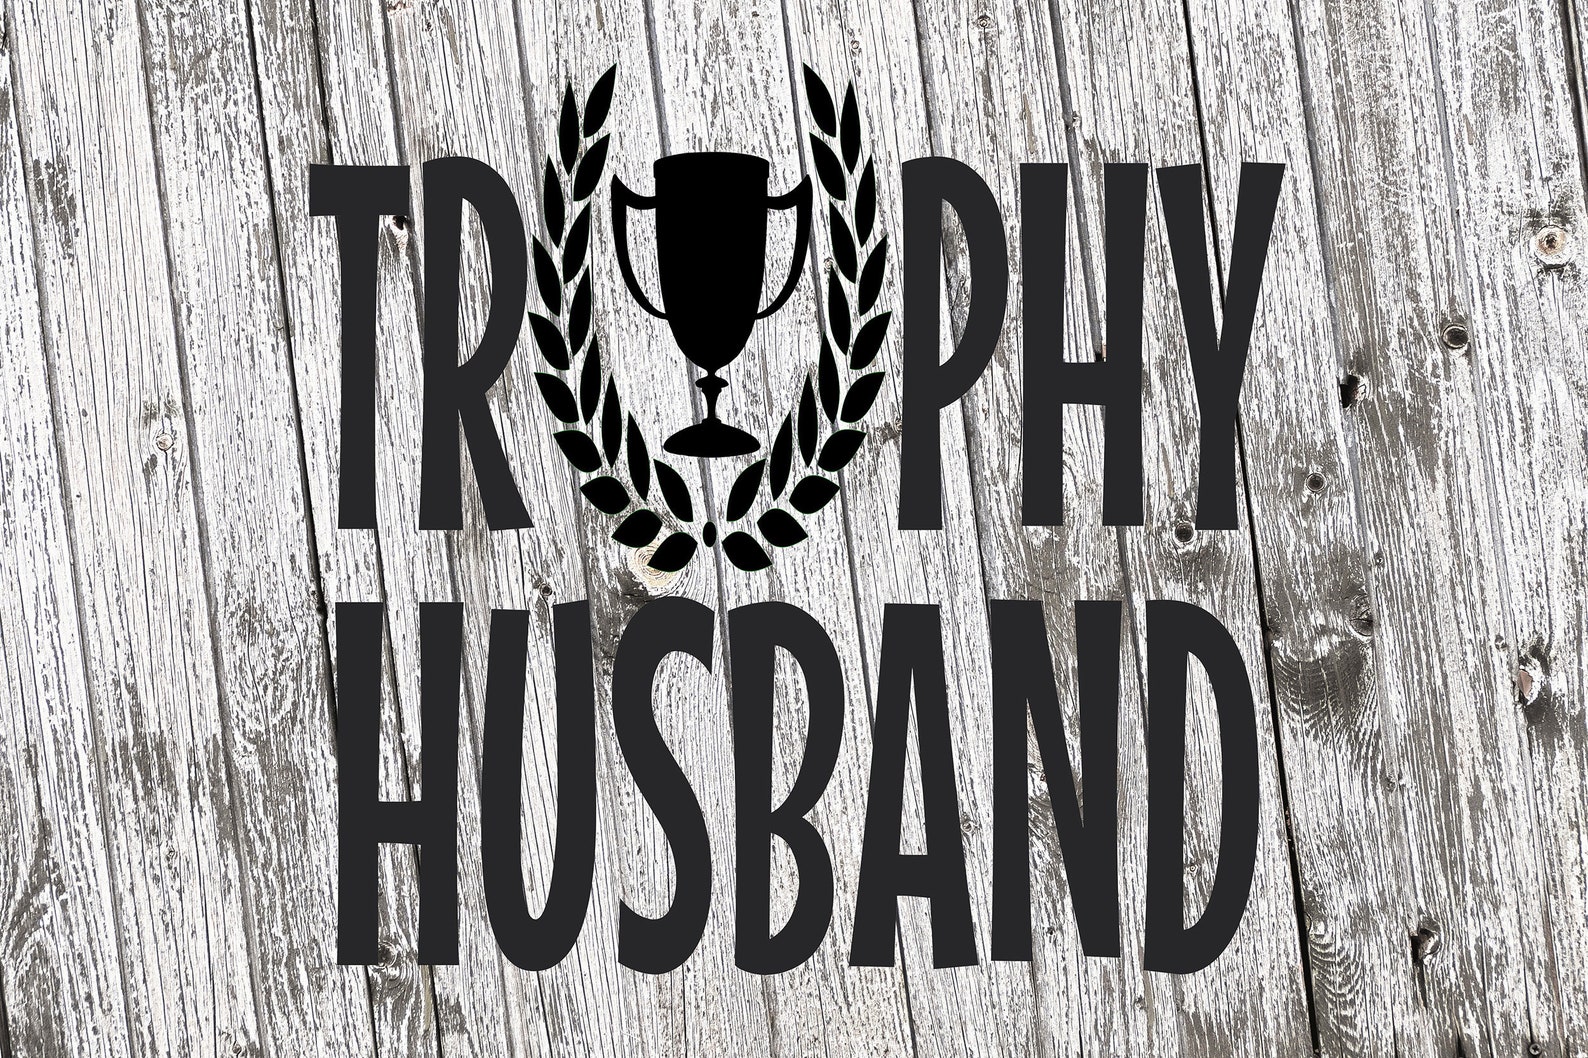 Free Free Trophy Husband Svg Free 242 SVG PNG EPS DXF File